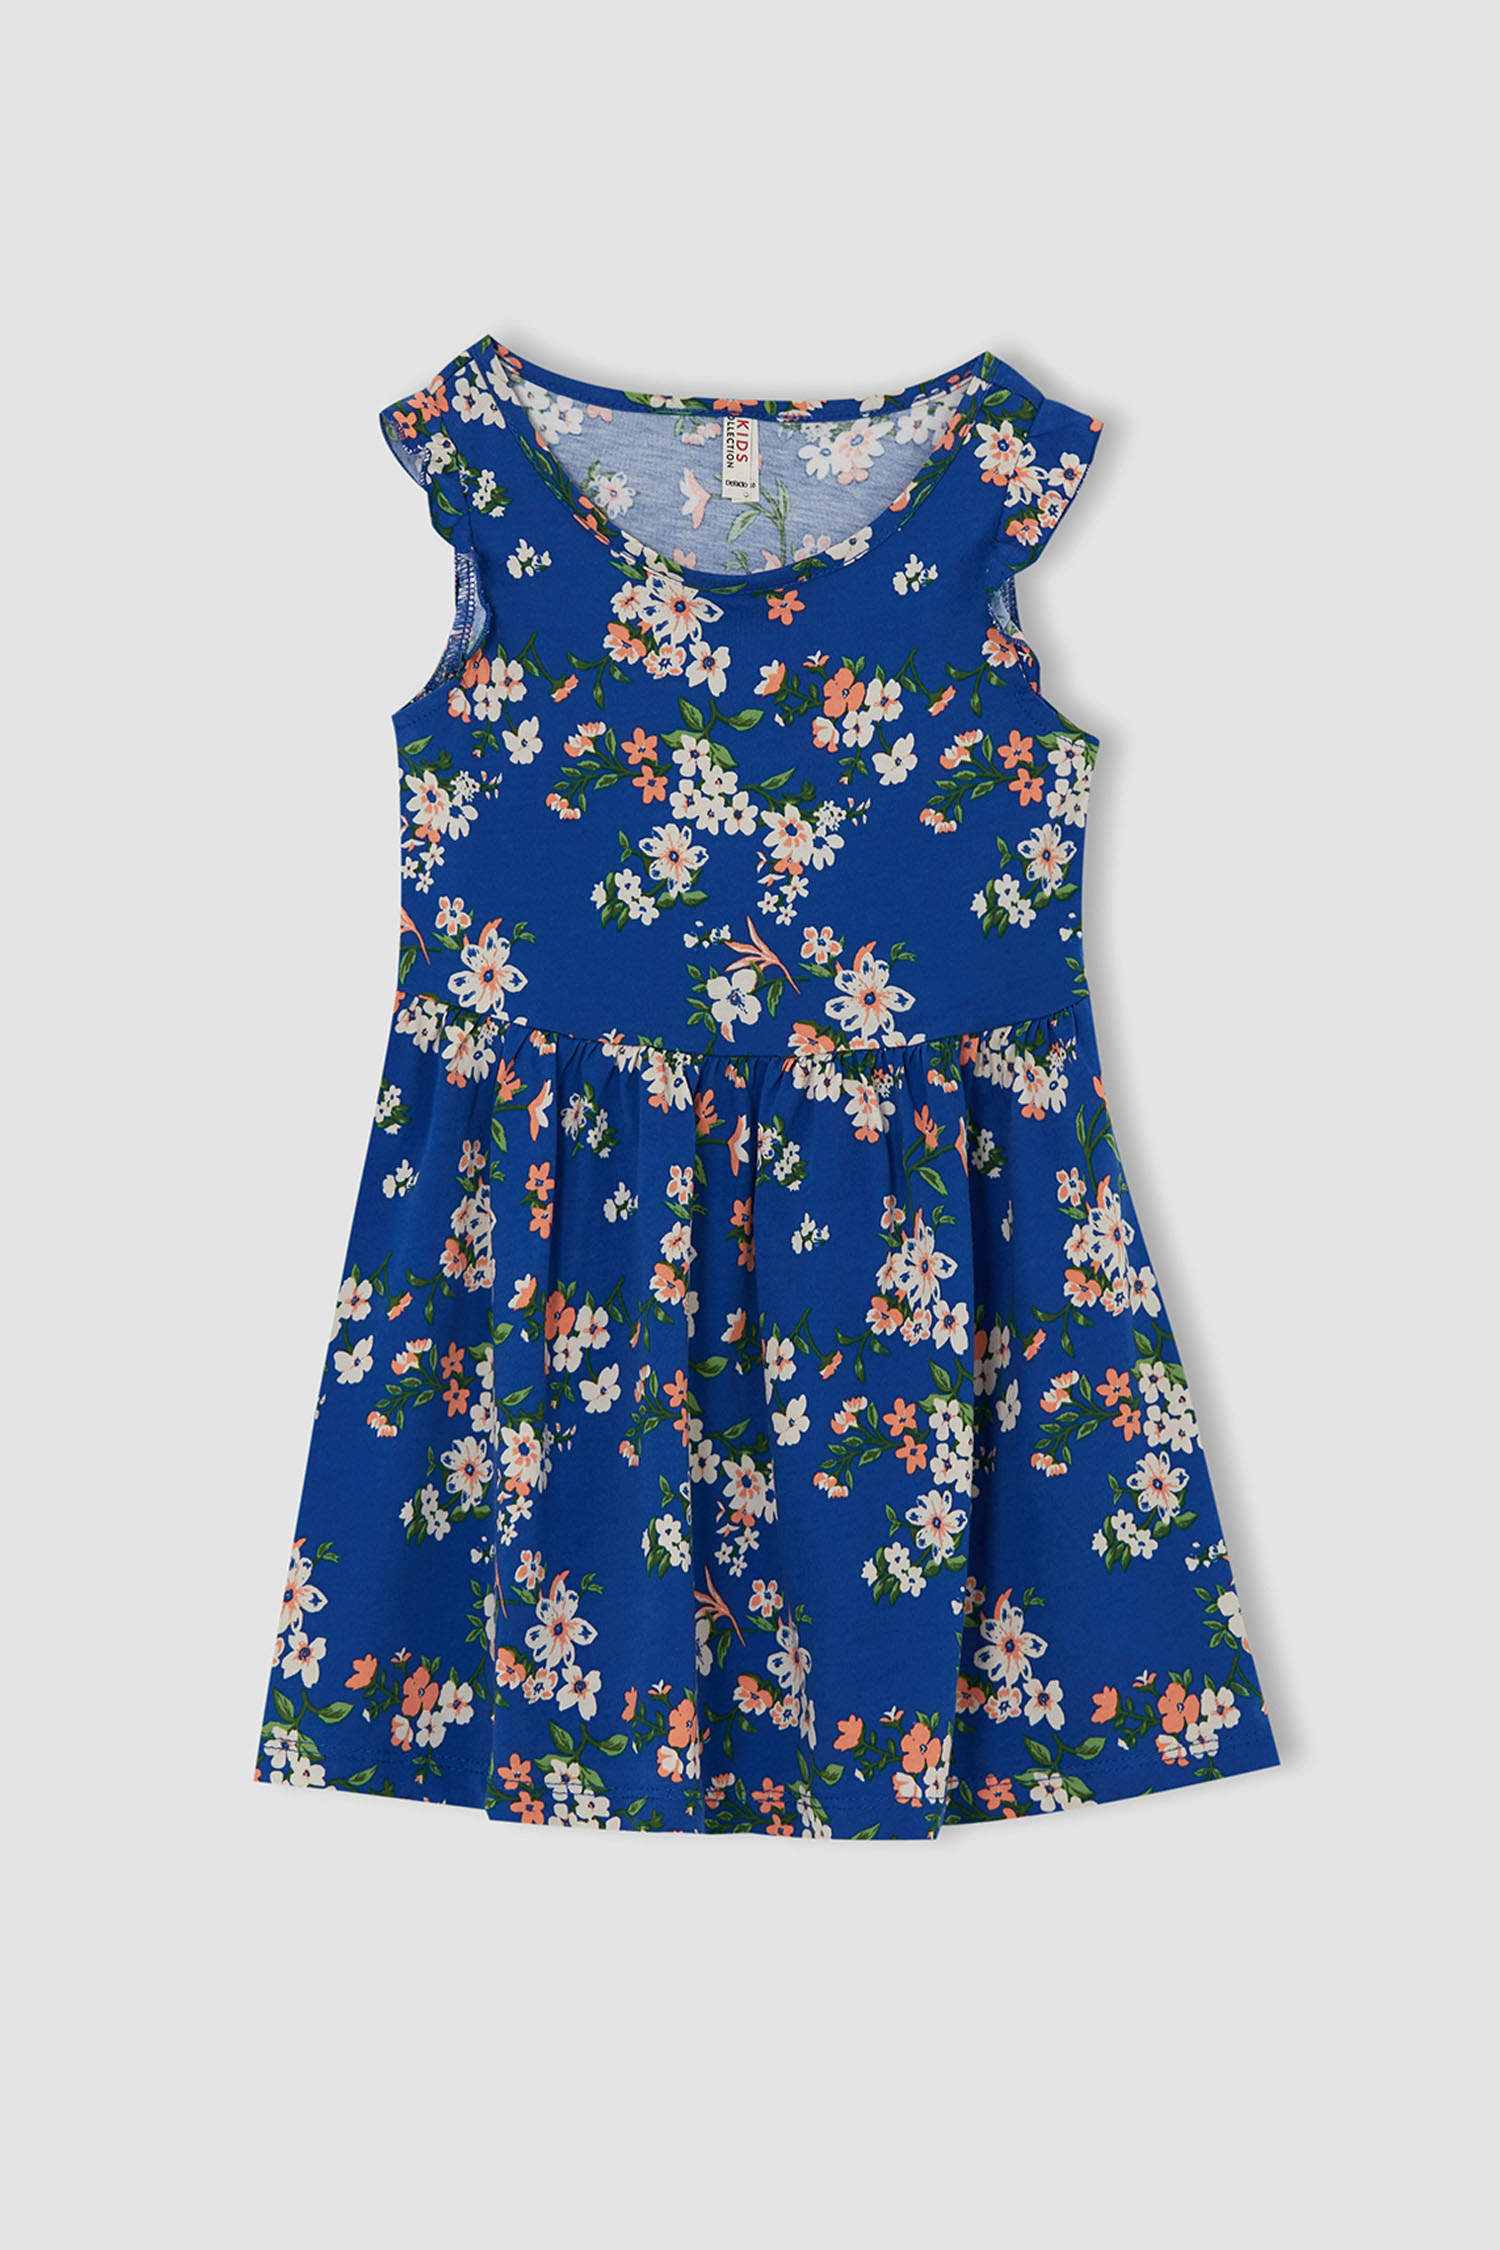 Blue GIRLS & TEENS Girl Regular Fit Knitted Butterfly Print Dress ...